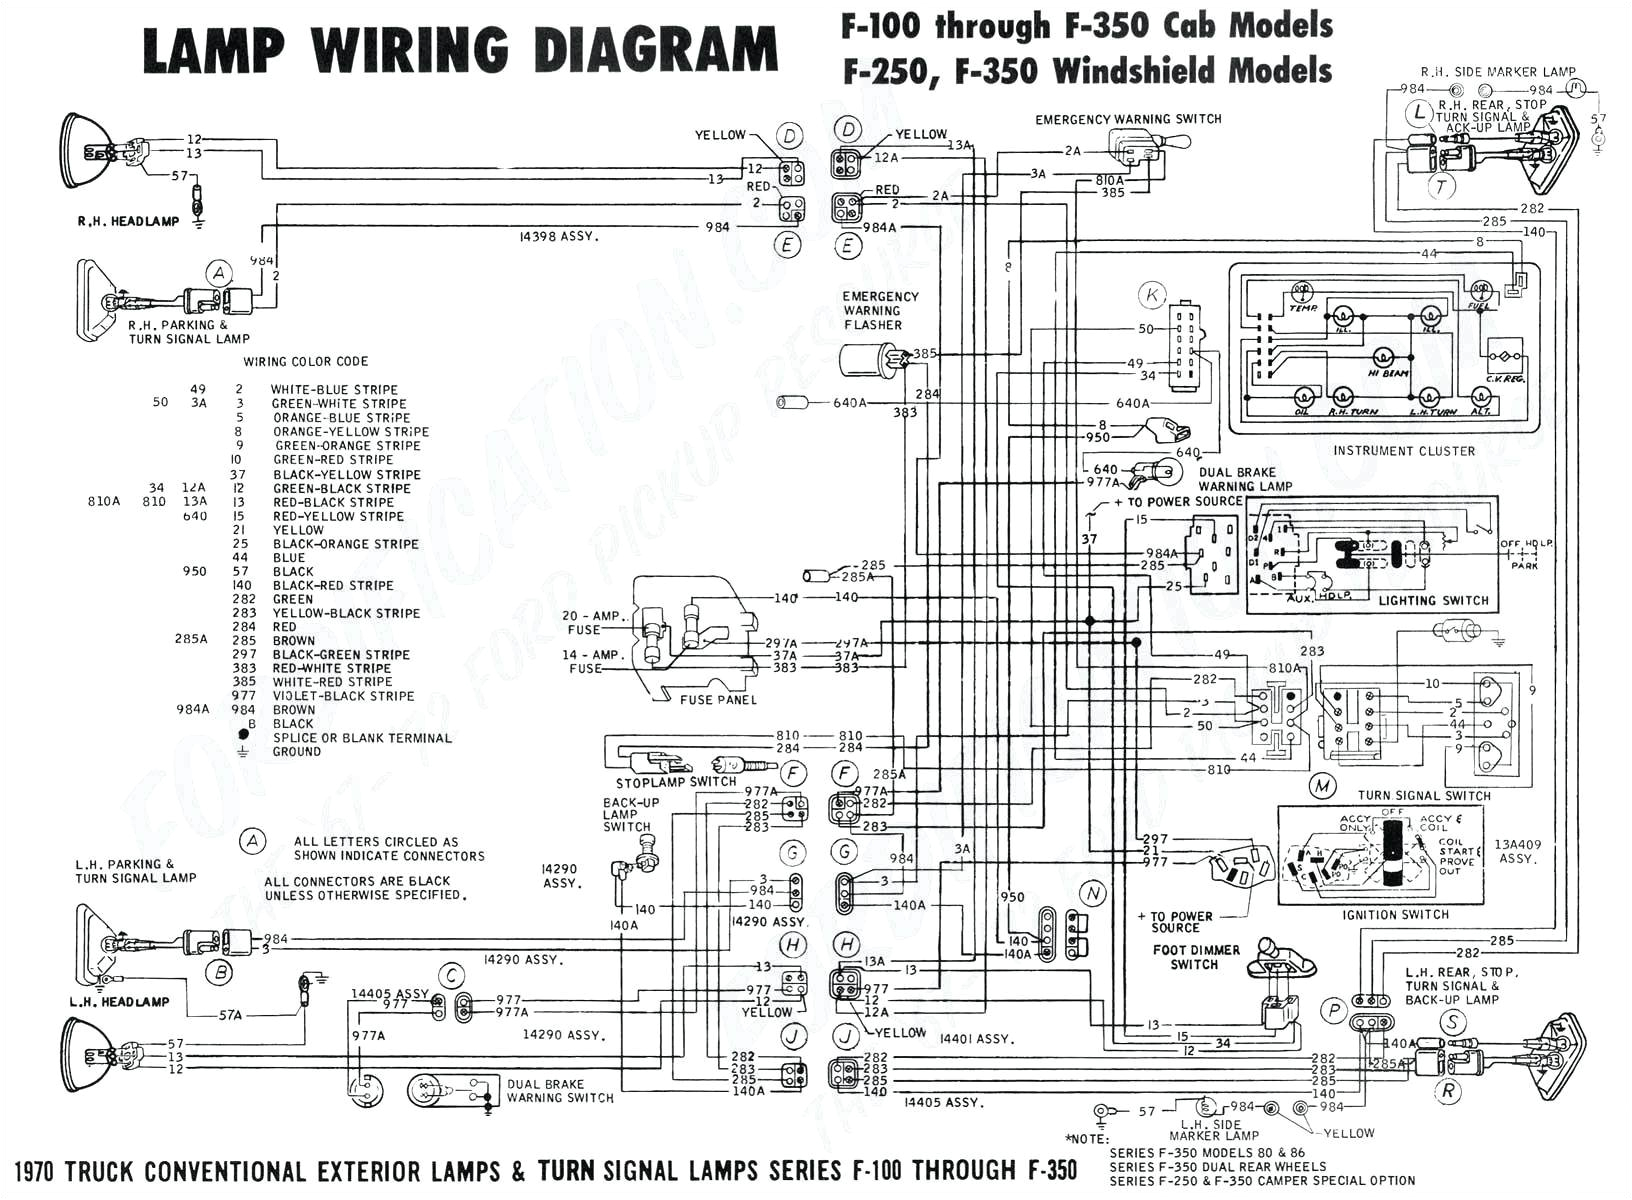 1981 kz650 wiring diagram wiring diagram new 1981 kz650 wiring diagram